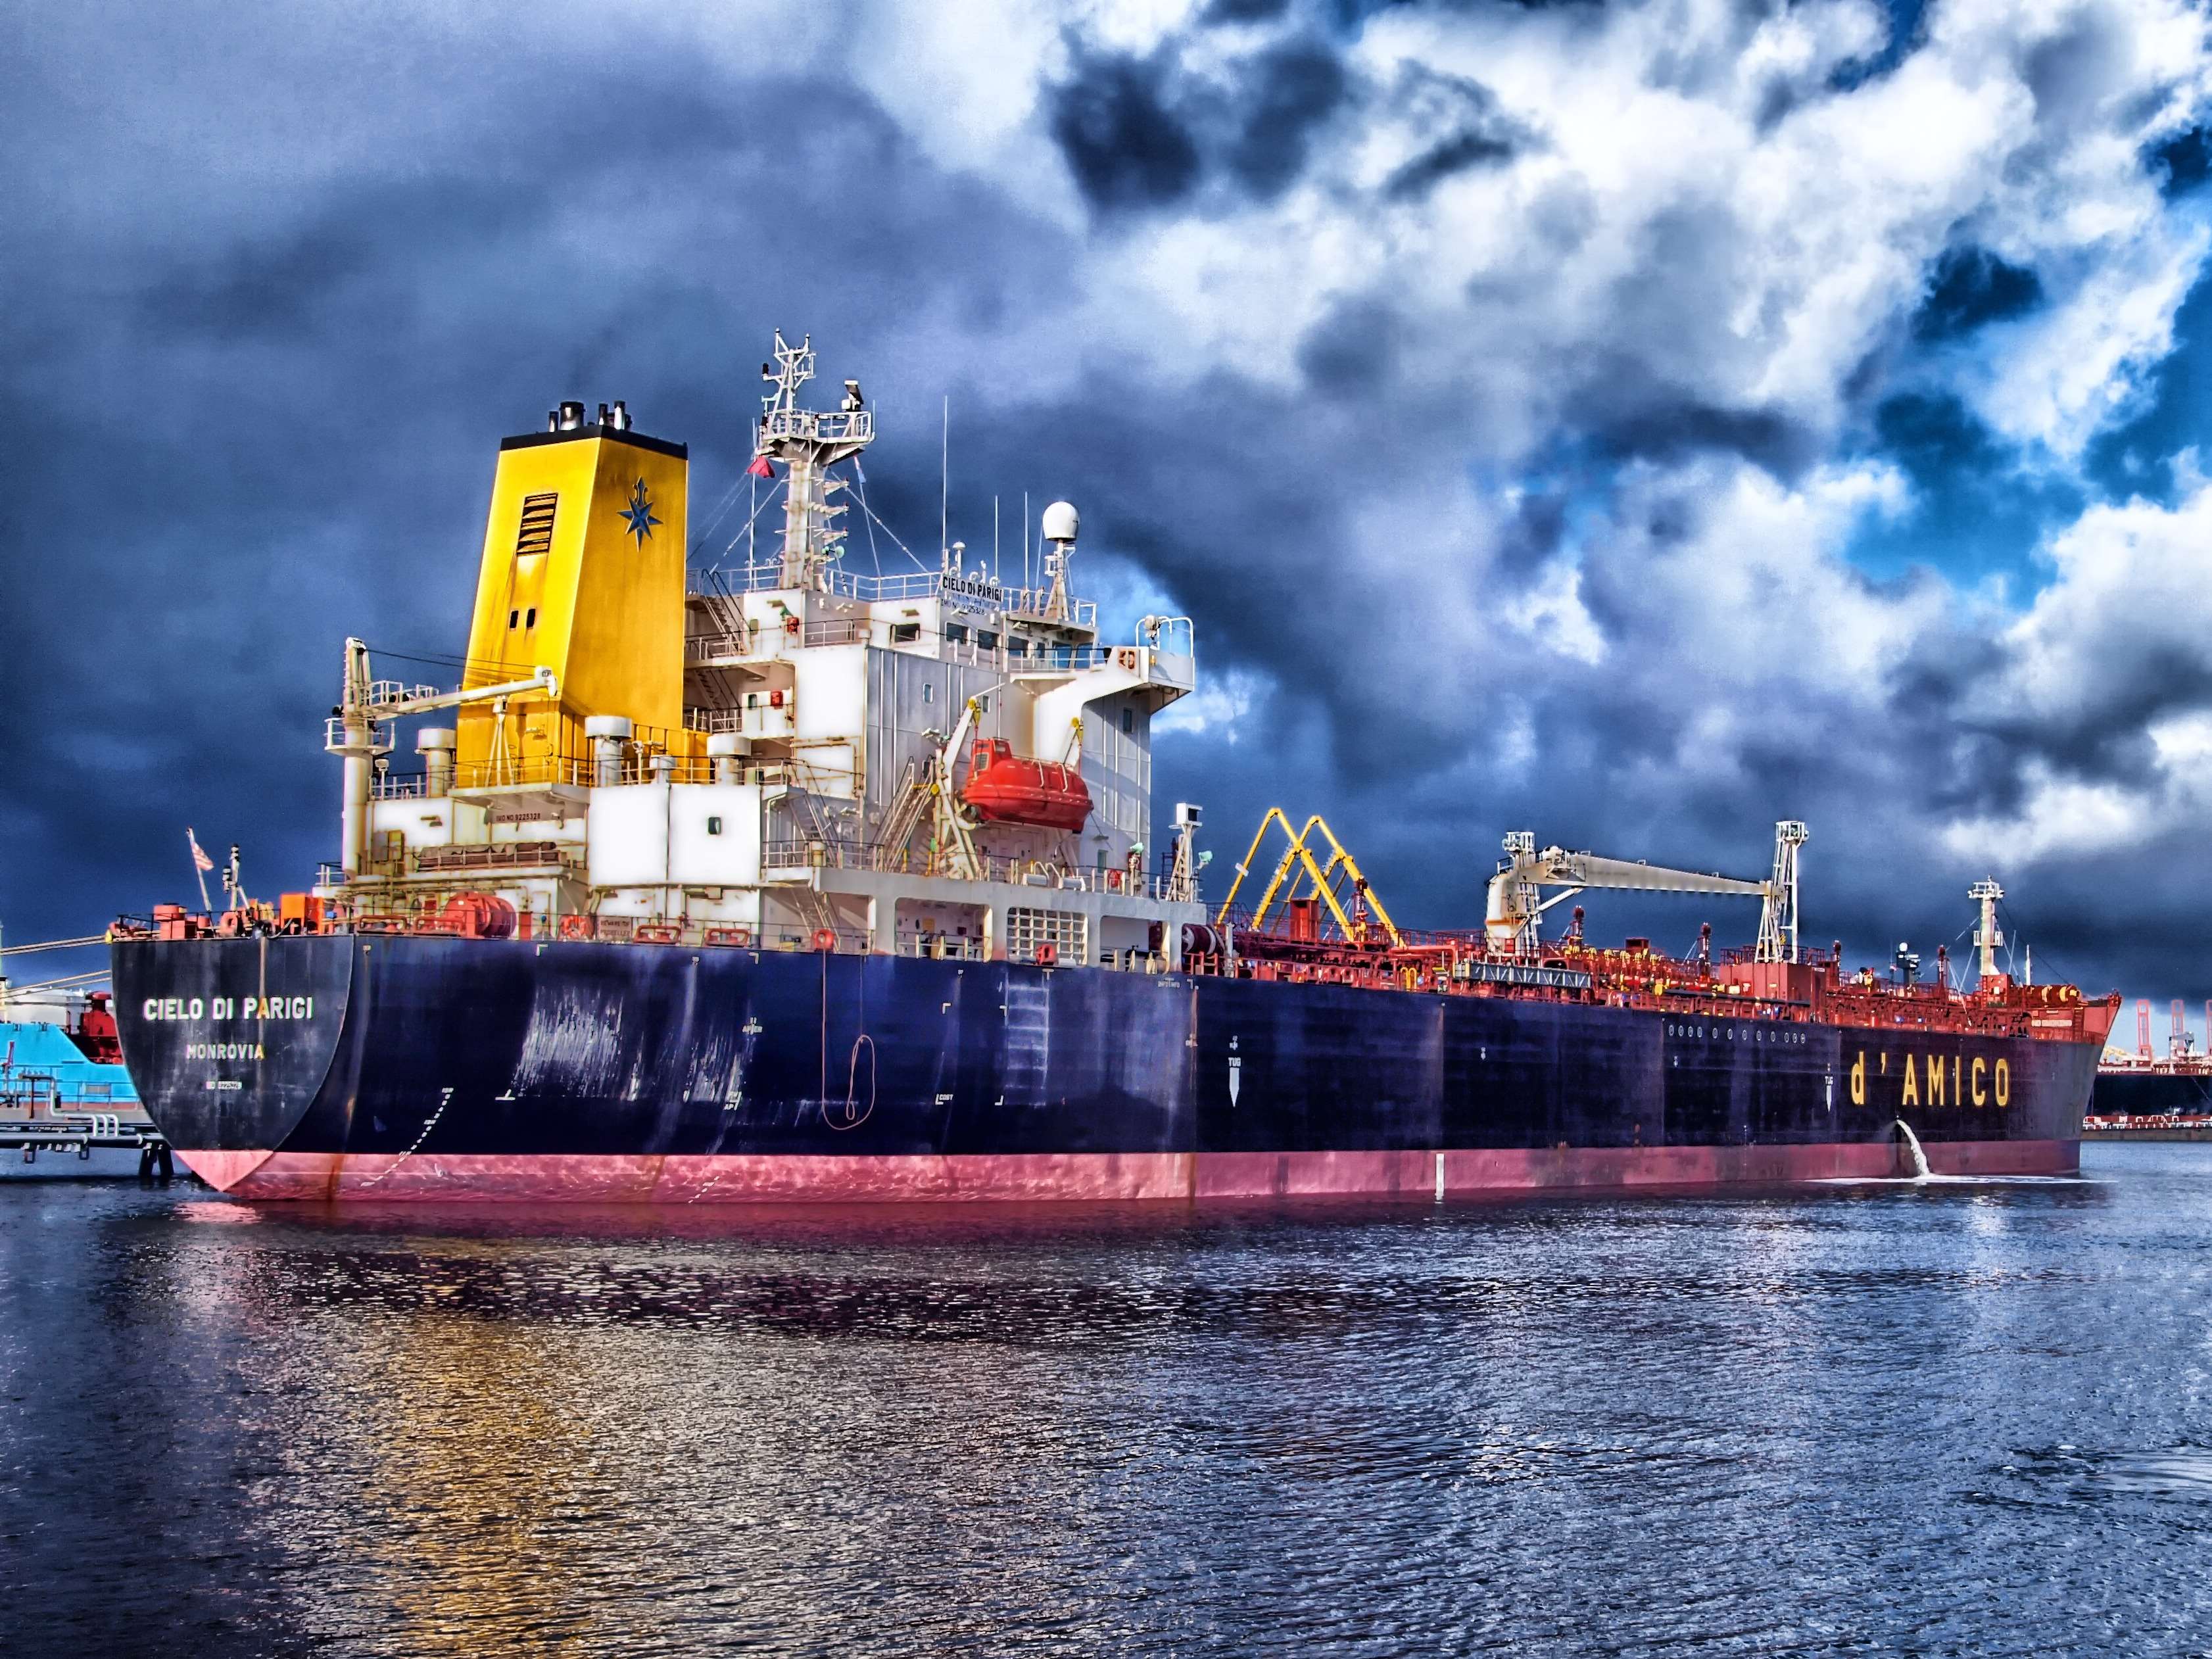 cargo ship, cloudy, container ship, ocean, sail, sea, ship, sky, water, royalty free image wallpaper